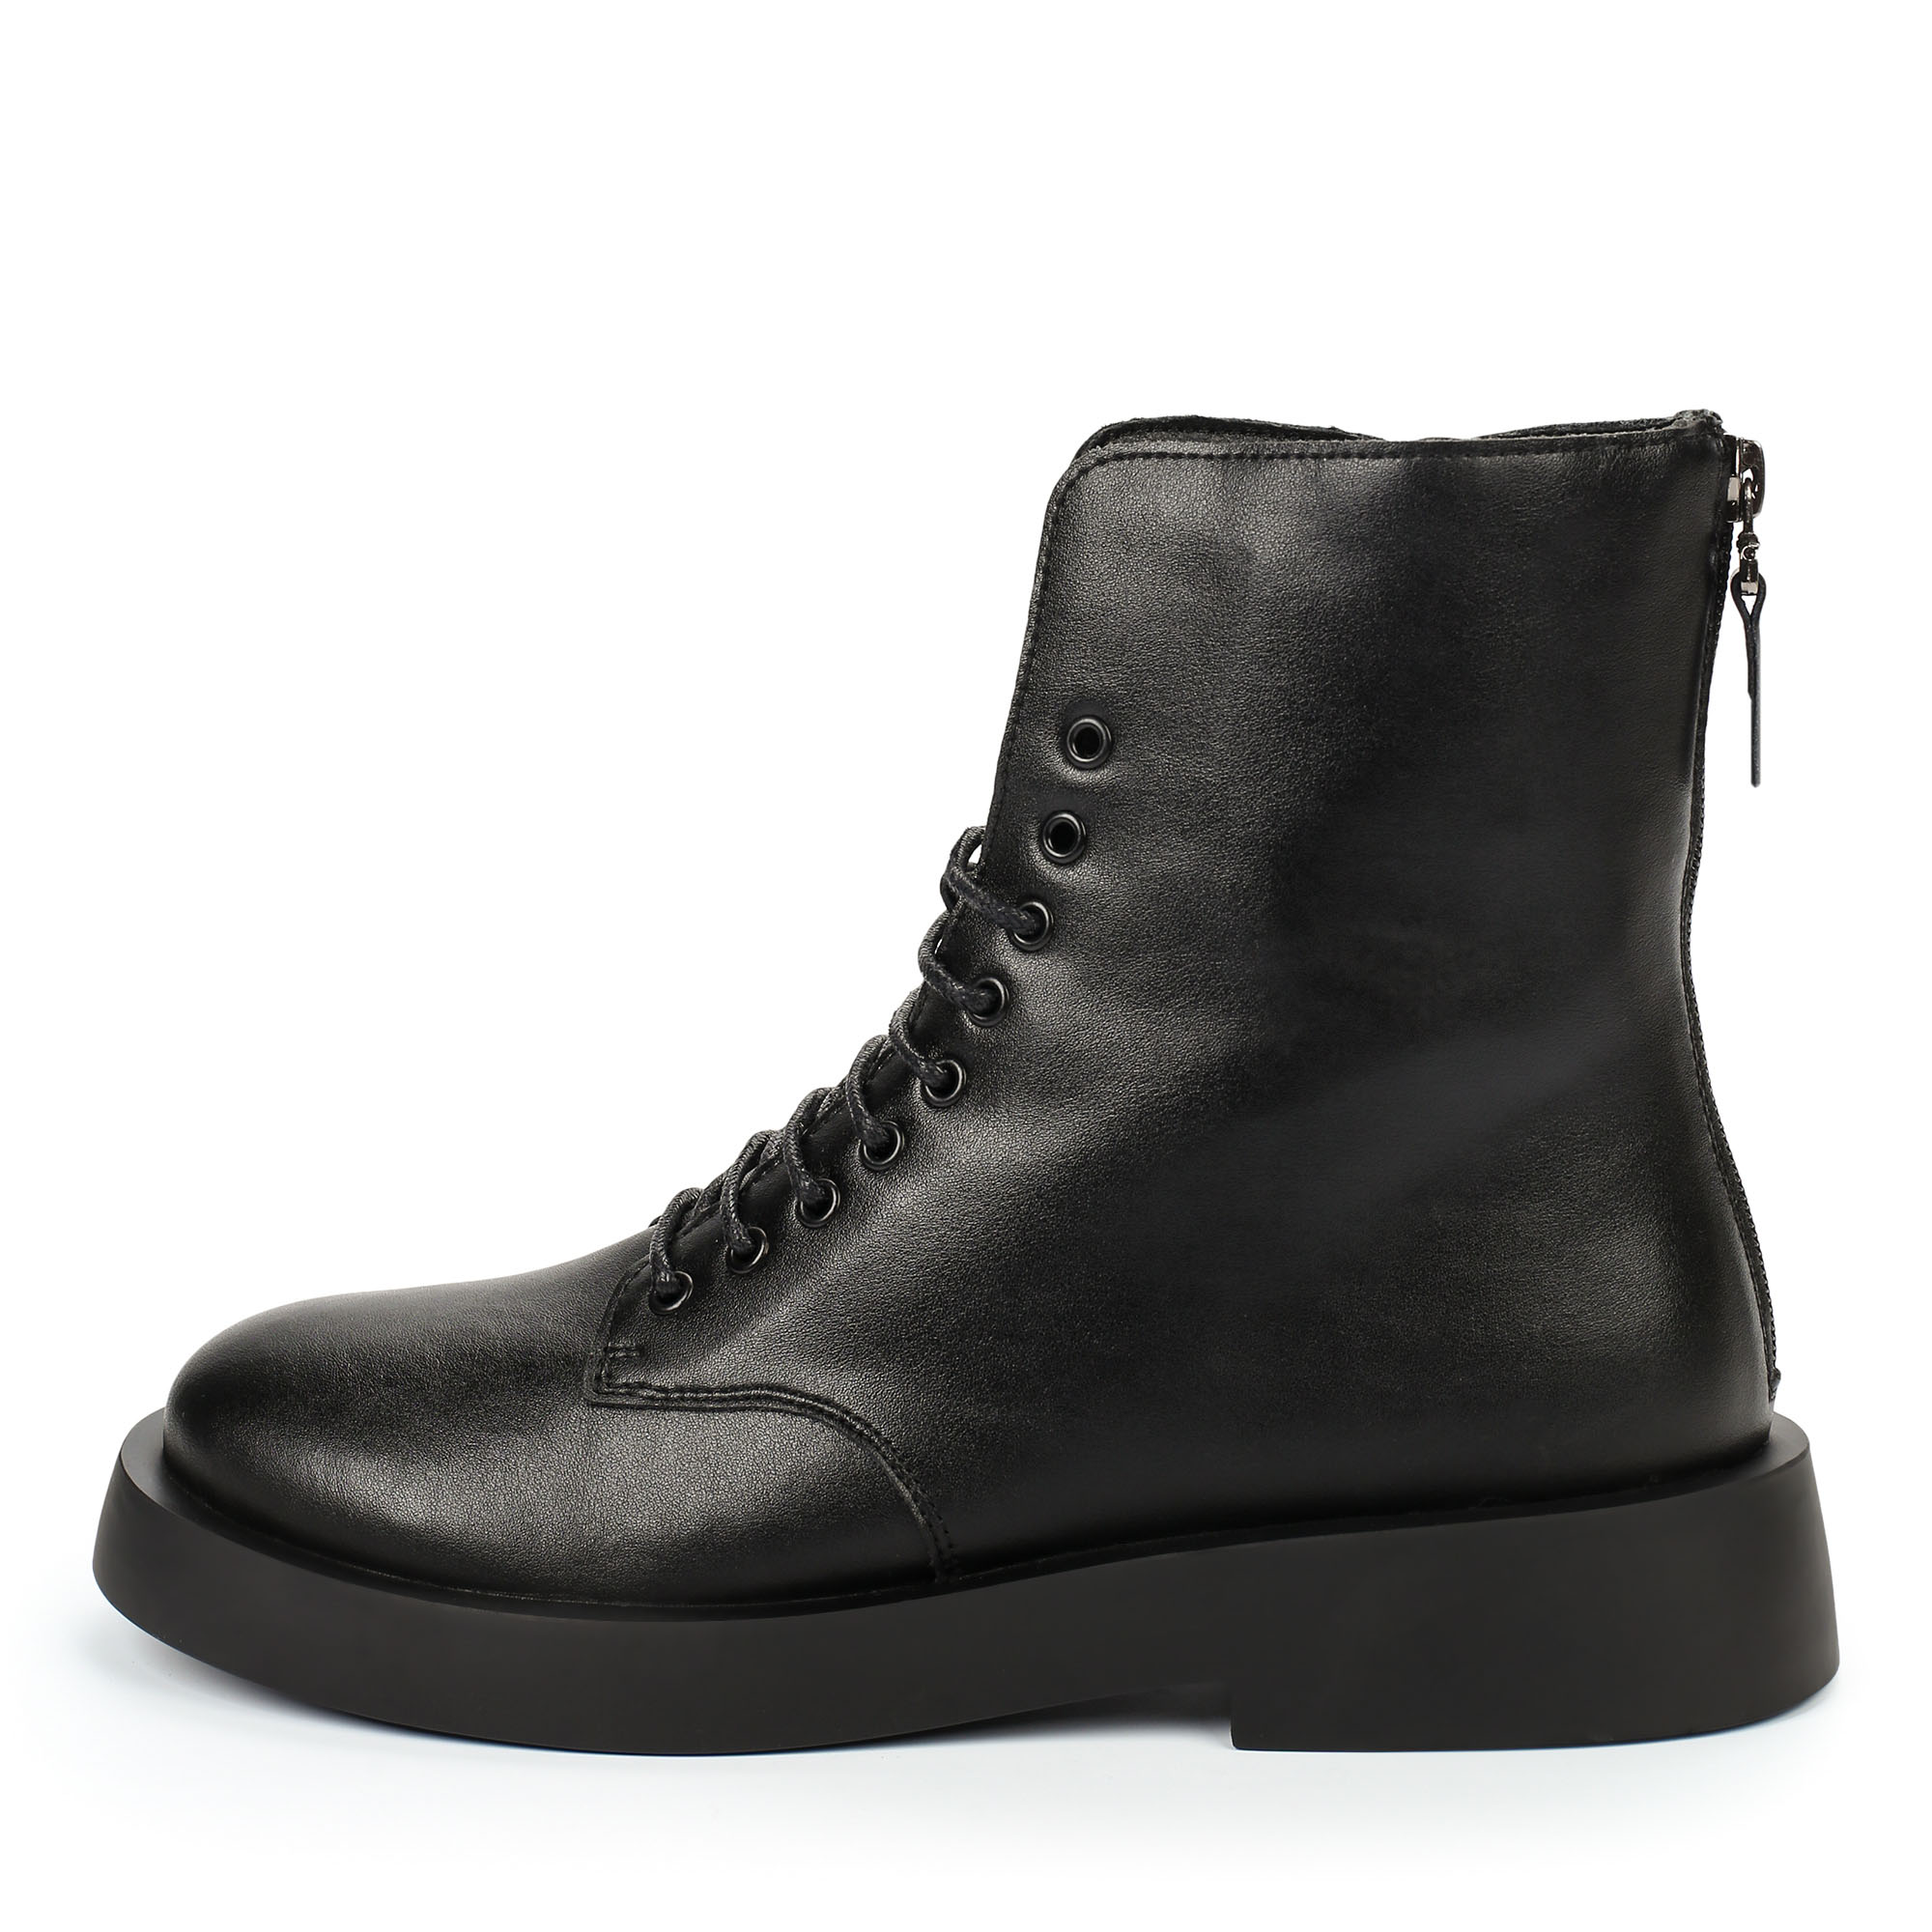 Ботинки Thomas Munz 025-740A-2602, цвет черный, размер 37